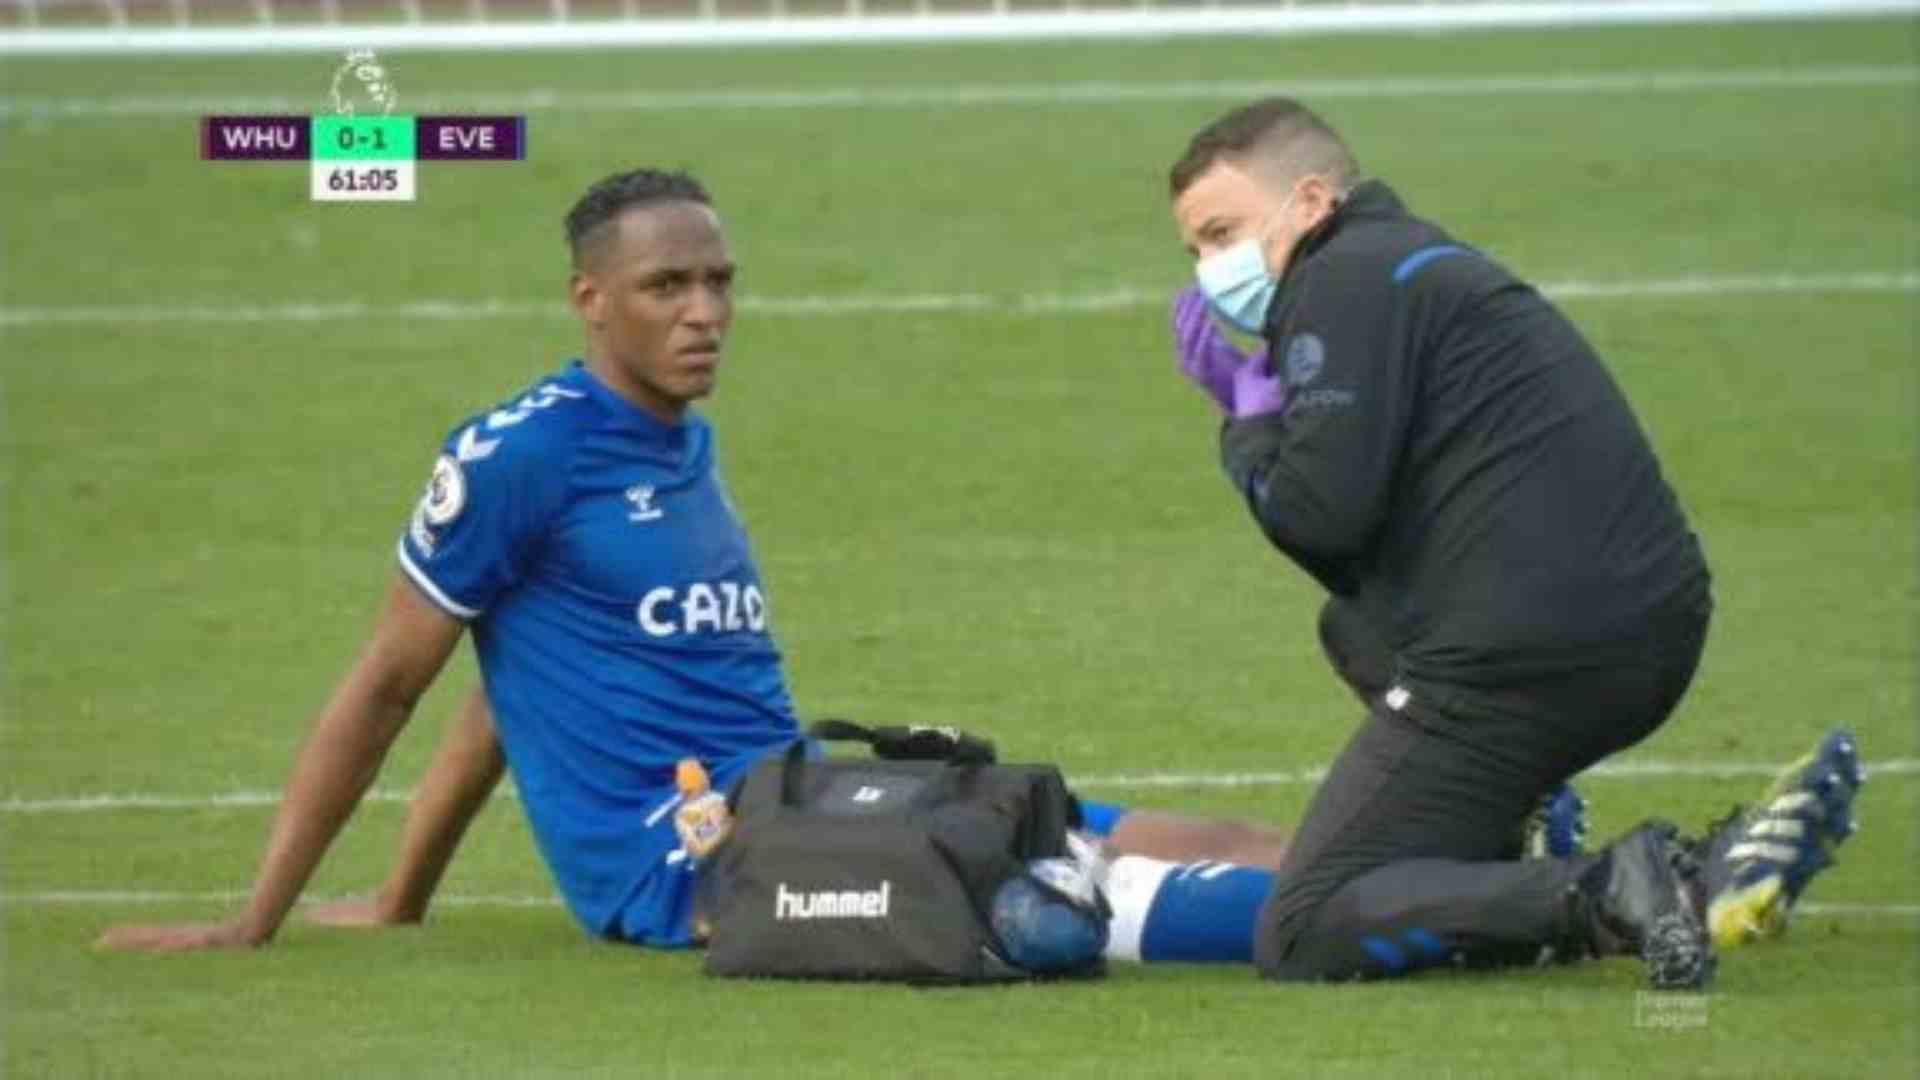 ¡No puede ser! Yerry Mina vuelve a salir lesionado del terreno de juego con Everton